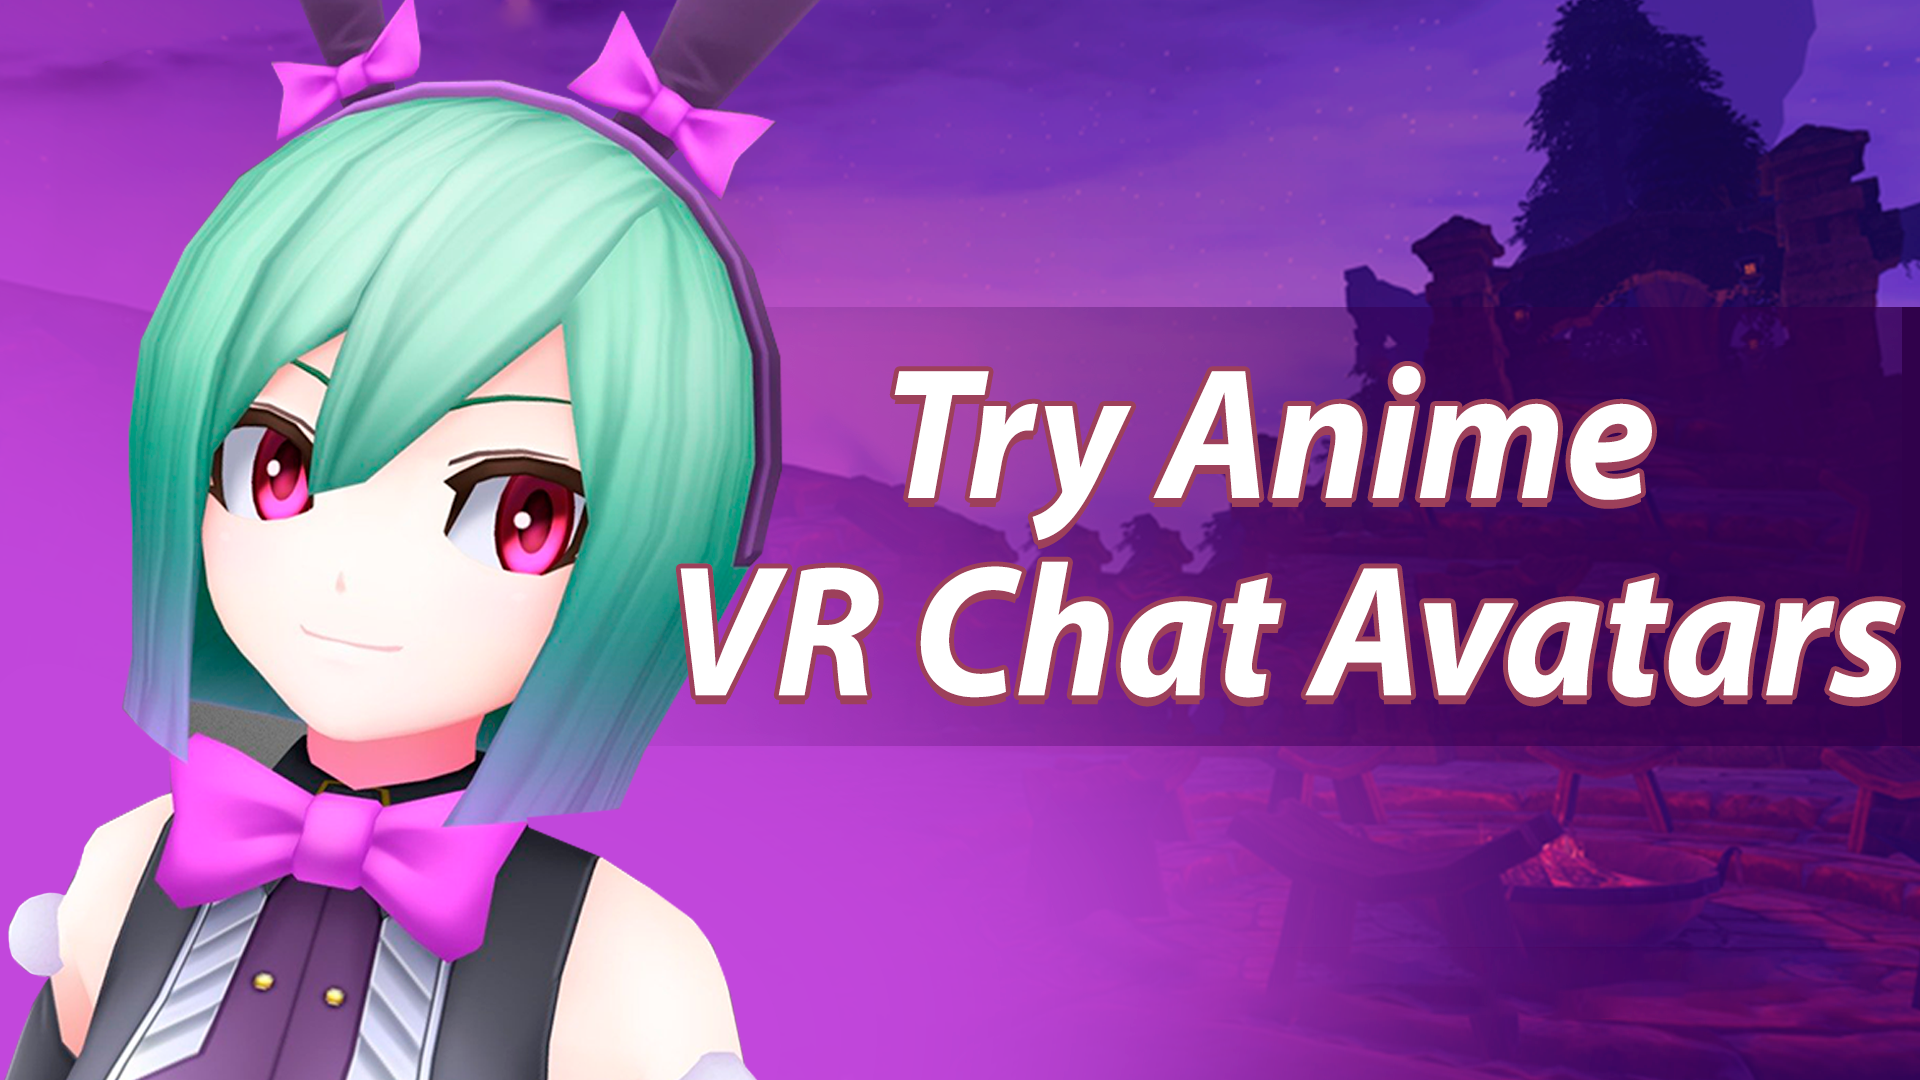 Nếu bạn yêu thích truyện tranh và anime, hãy thử trải nghiệm với anime avatars VRChat LDPlayer. Bạn sẽ được hóa thân thành nhân vật yêu thích và tham gia vào những cuộc phiêu lưu cùng những người chơi khác trên toàn thế giới. Hãy khám phá và tạo cho mình một avatar theo phong cách anime đẹp mắt nào!